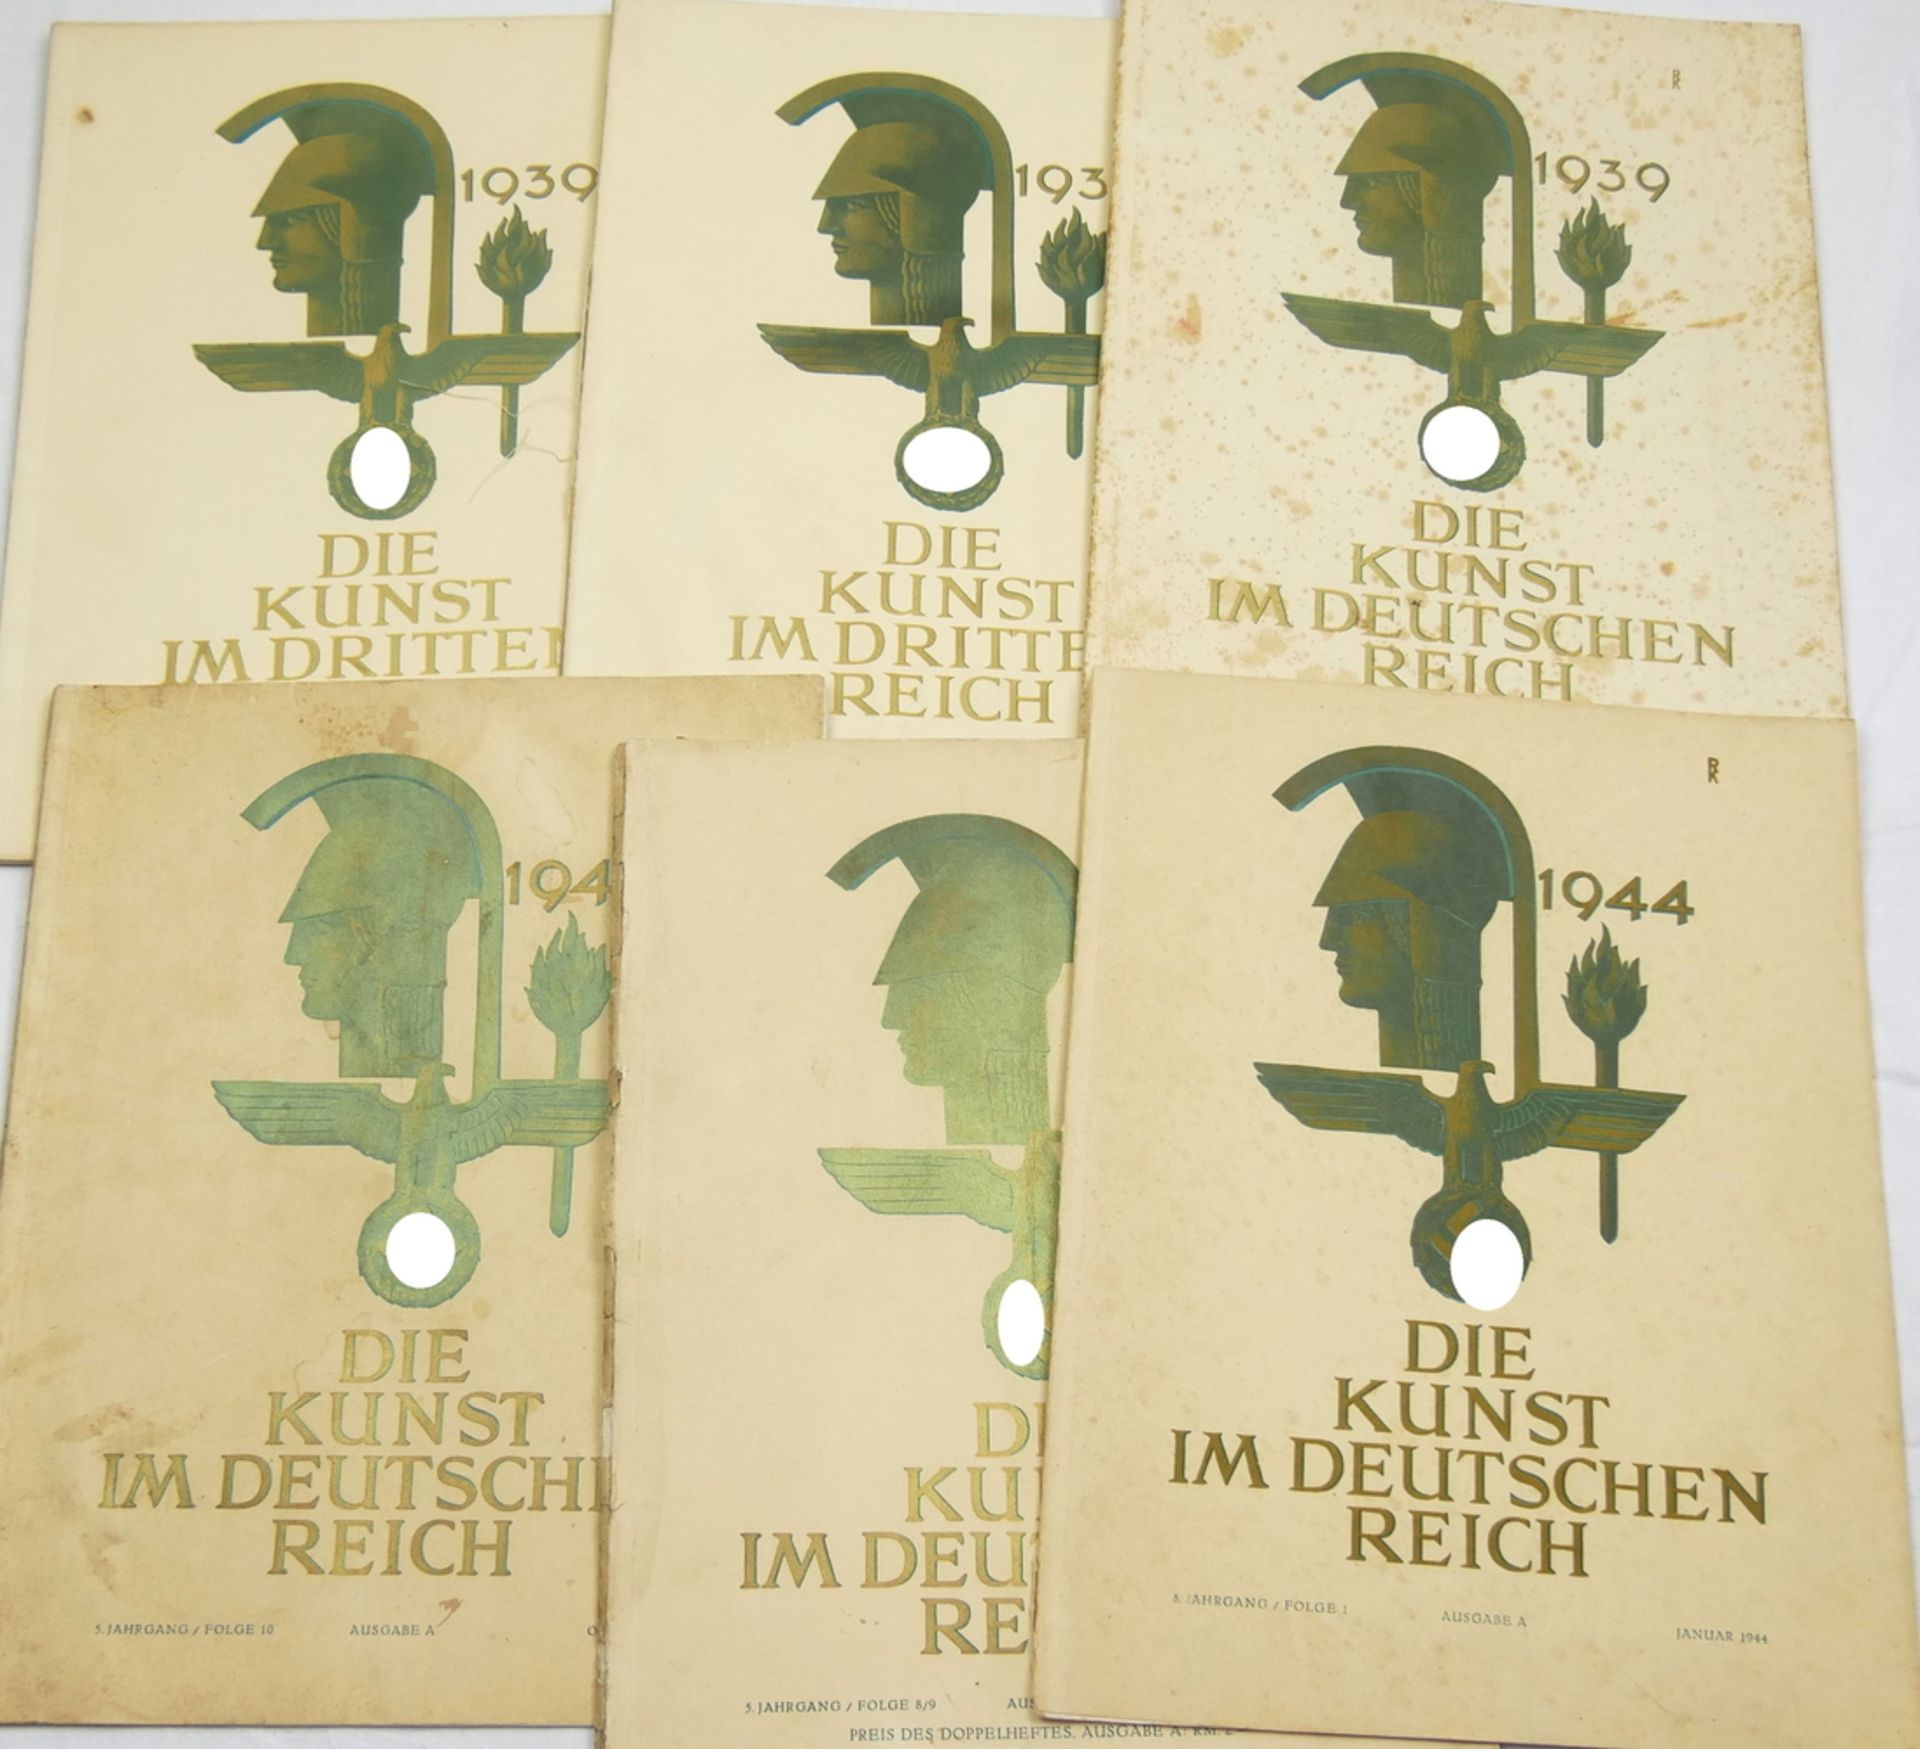 Die Kunst im Deutschen Reich. Ausgabe A: 3. Jg. Folge 4, 1939; 3. Jg. Folge 7, 1939; 3. Jg. Folge